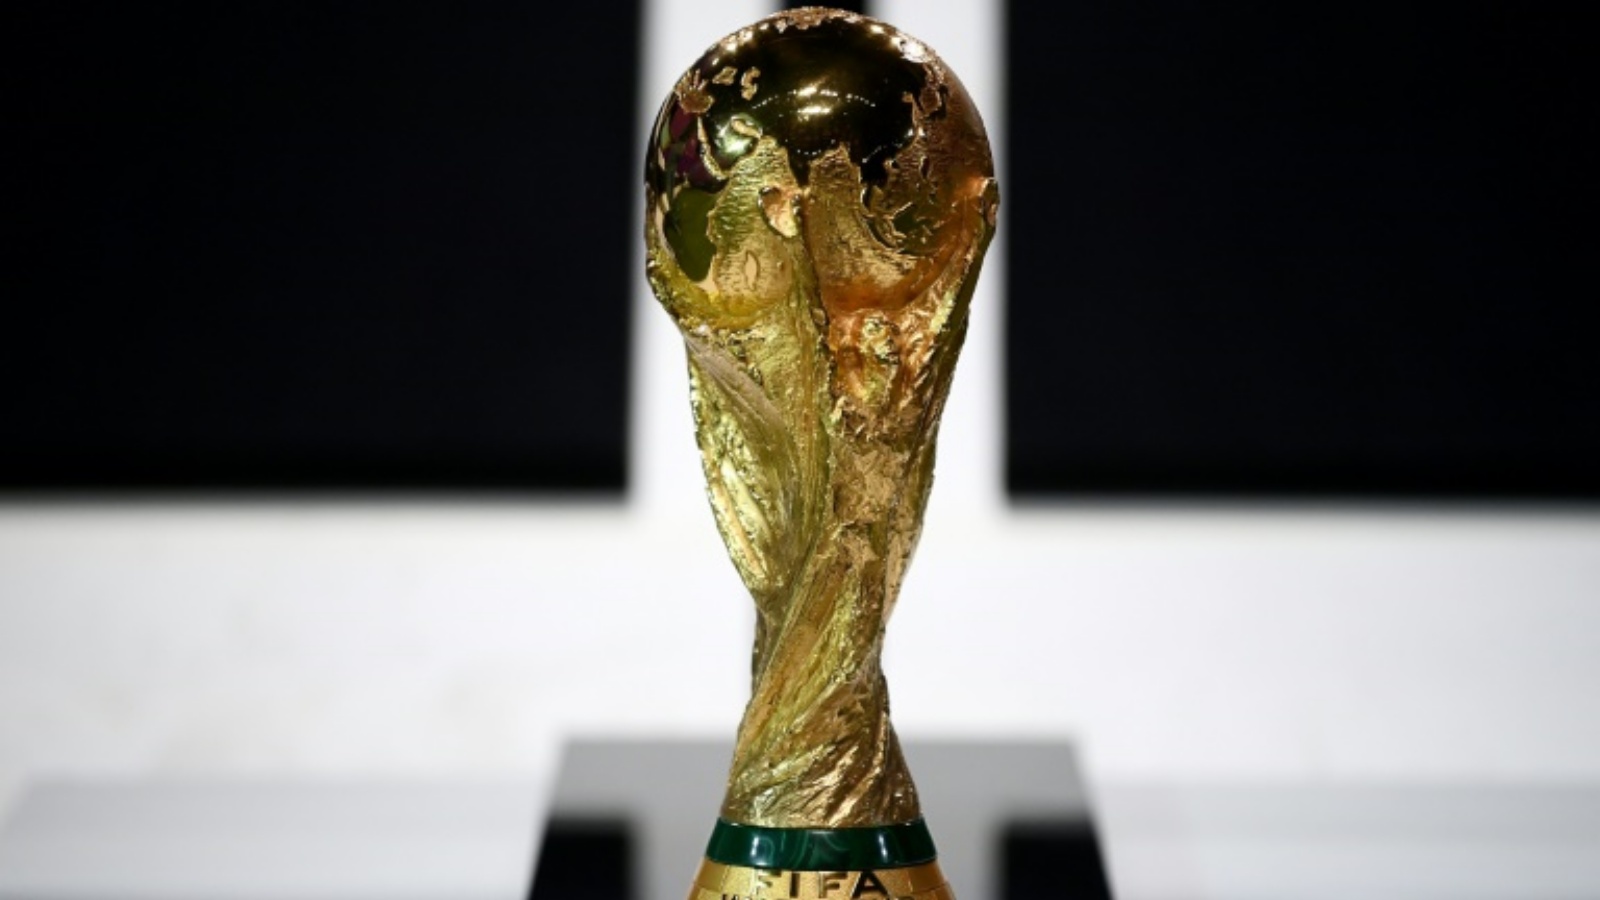 كأس العالم لكرة القدم معروضة في قاعة في الدوحة خلال جمعية فيفا العمومية في 31 مارس 2022